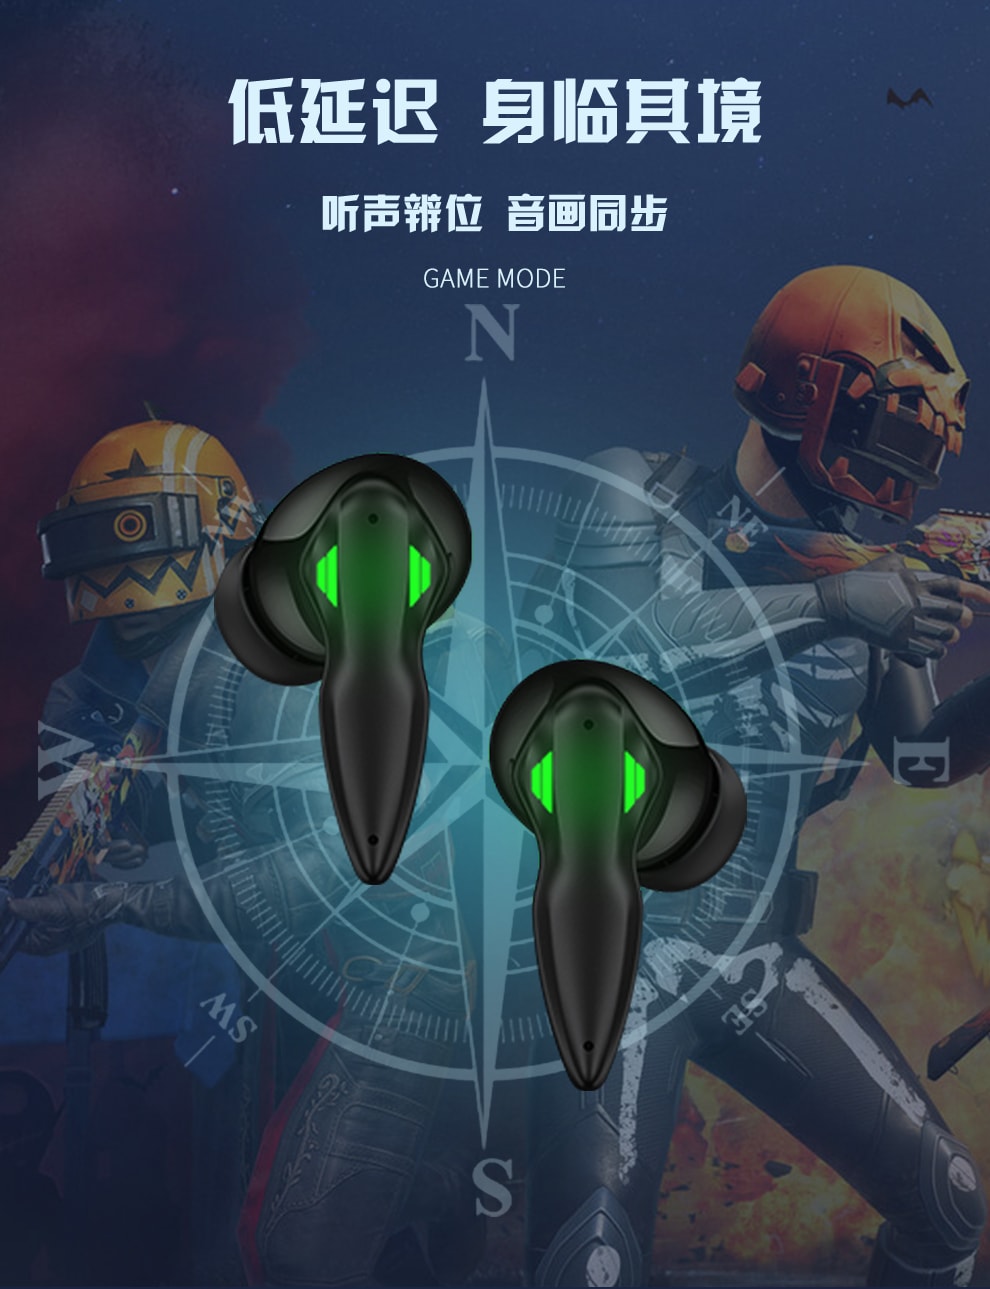 【銳思 RECCI】機甲黑頭盔TWS藍牙耳機 REP-W48 呼吸燈 遊戲模式